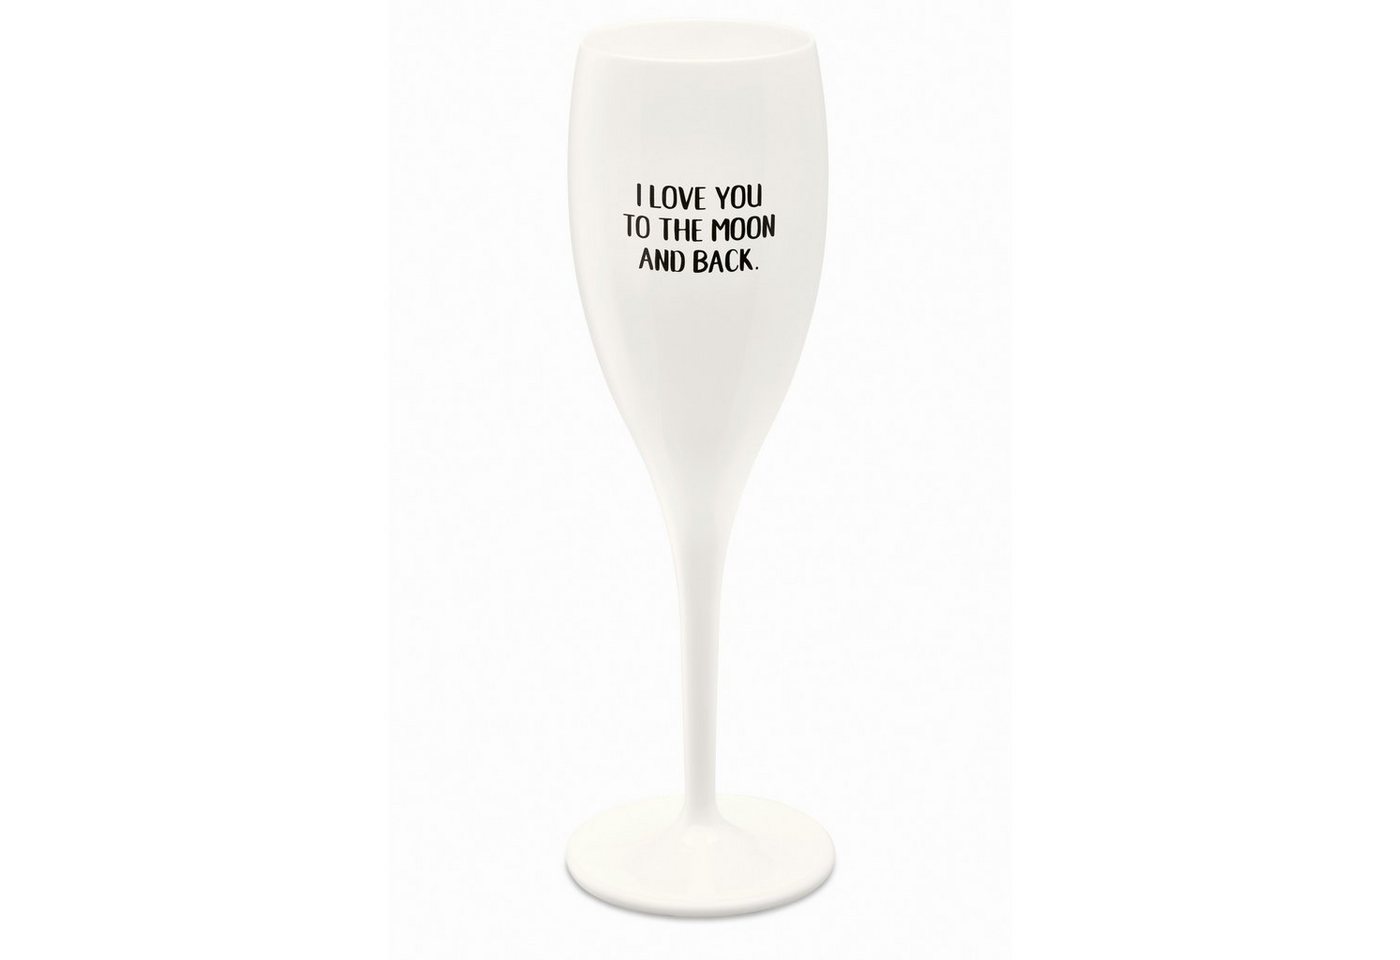 KOZIOL Sektglas Sektglas Cheers LOVE YOU TO THE MOON weiß 100ml, thermoplastischer Kunststoff von KOZIOL